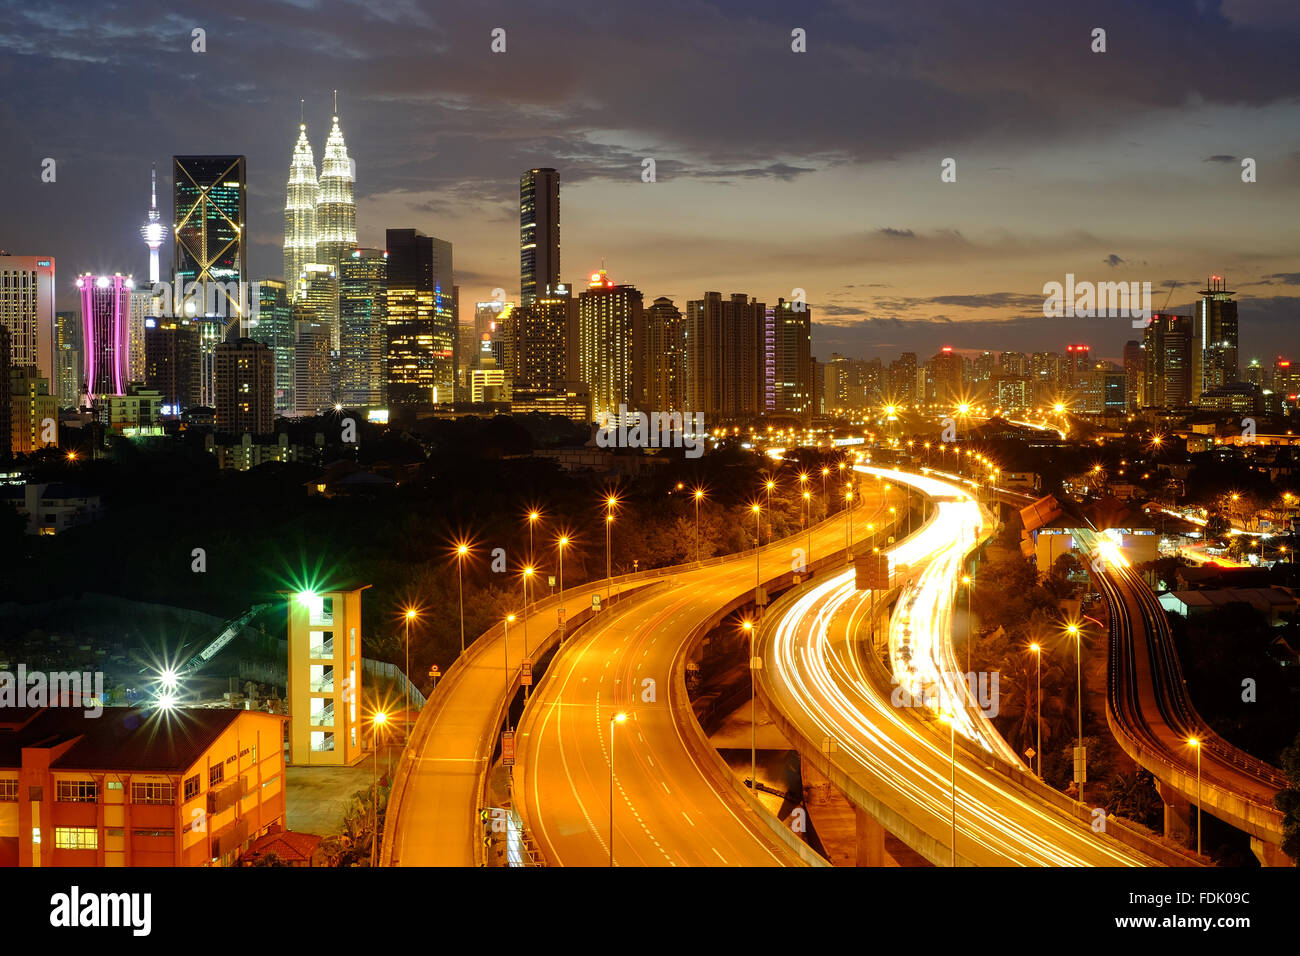 Kuala Lumpur skyline at night, Malaysia Stock Photo